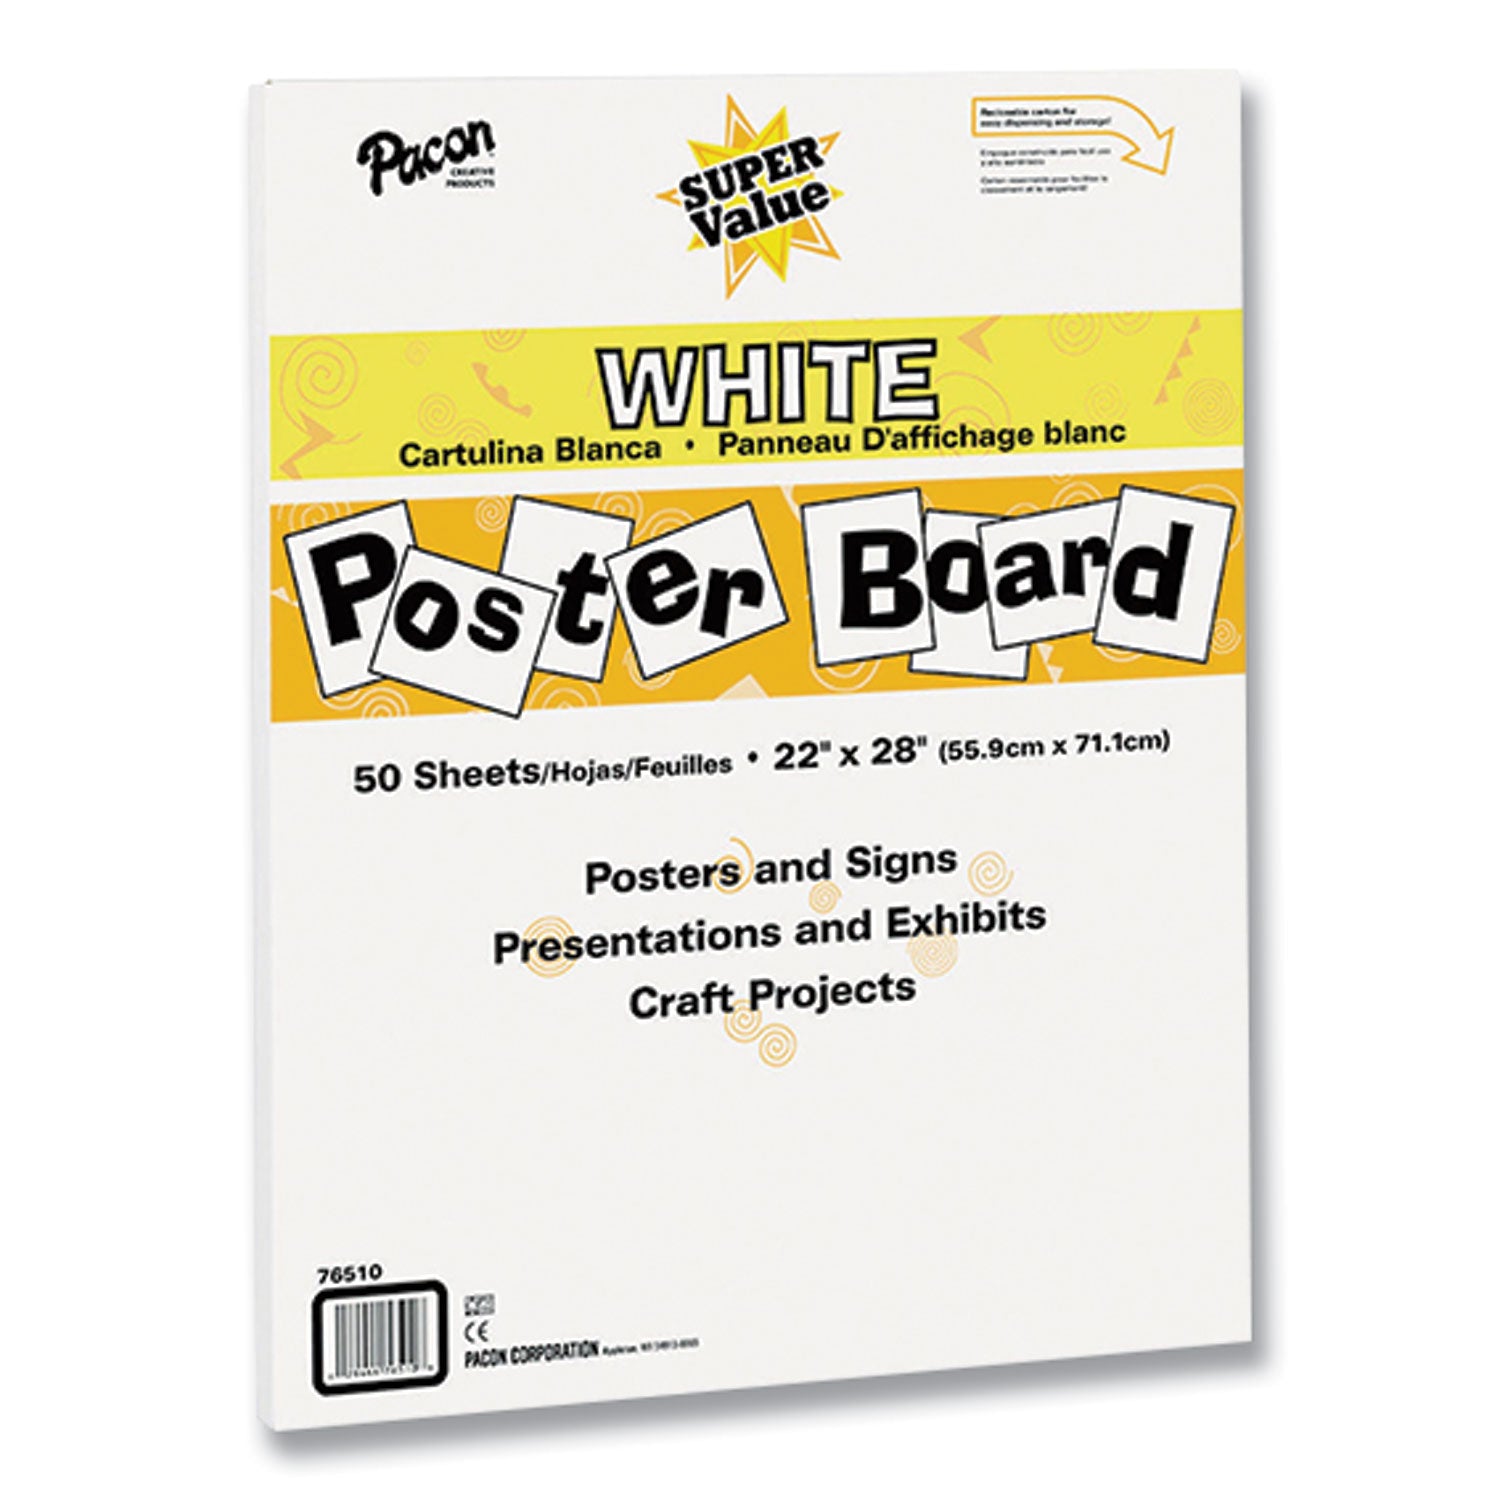 super-value-posterboard-22-x-28-white-50-carton_pac76510 - 1